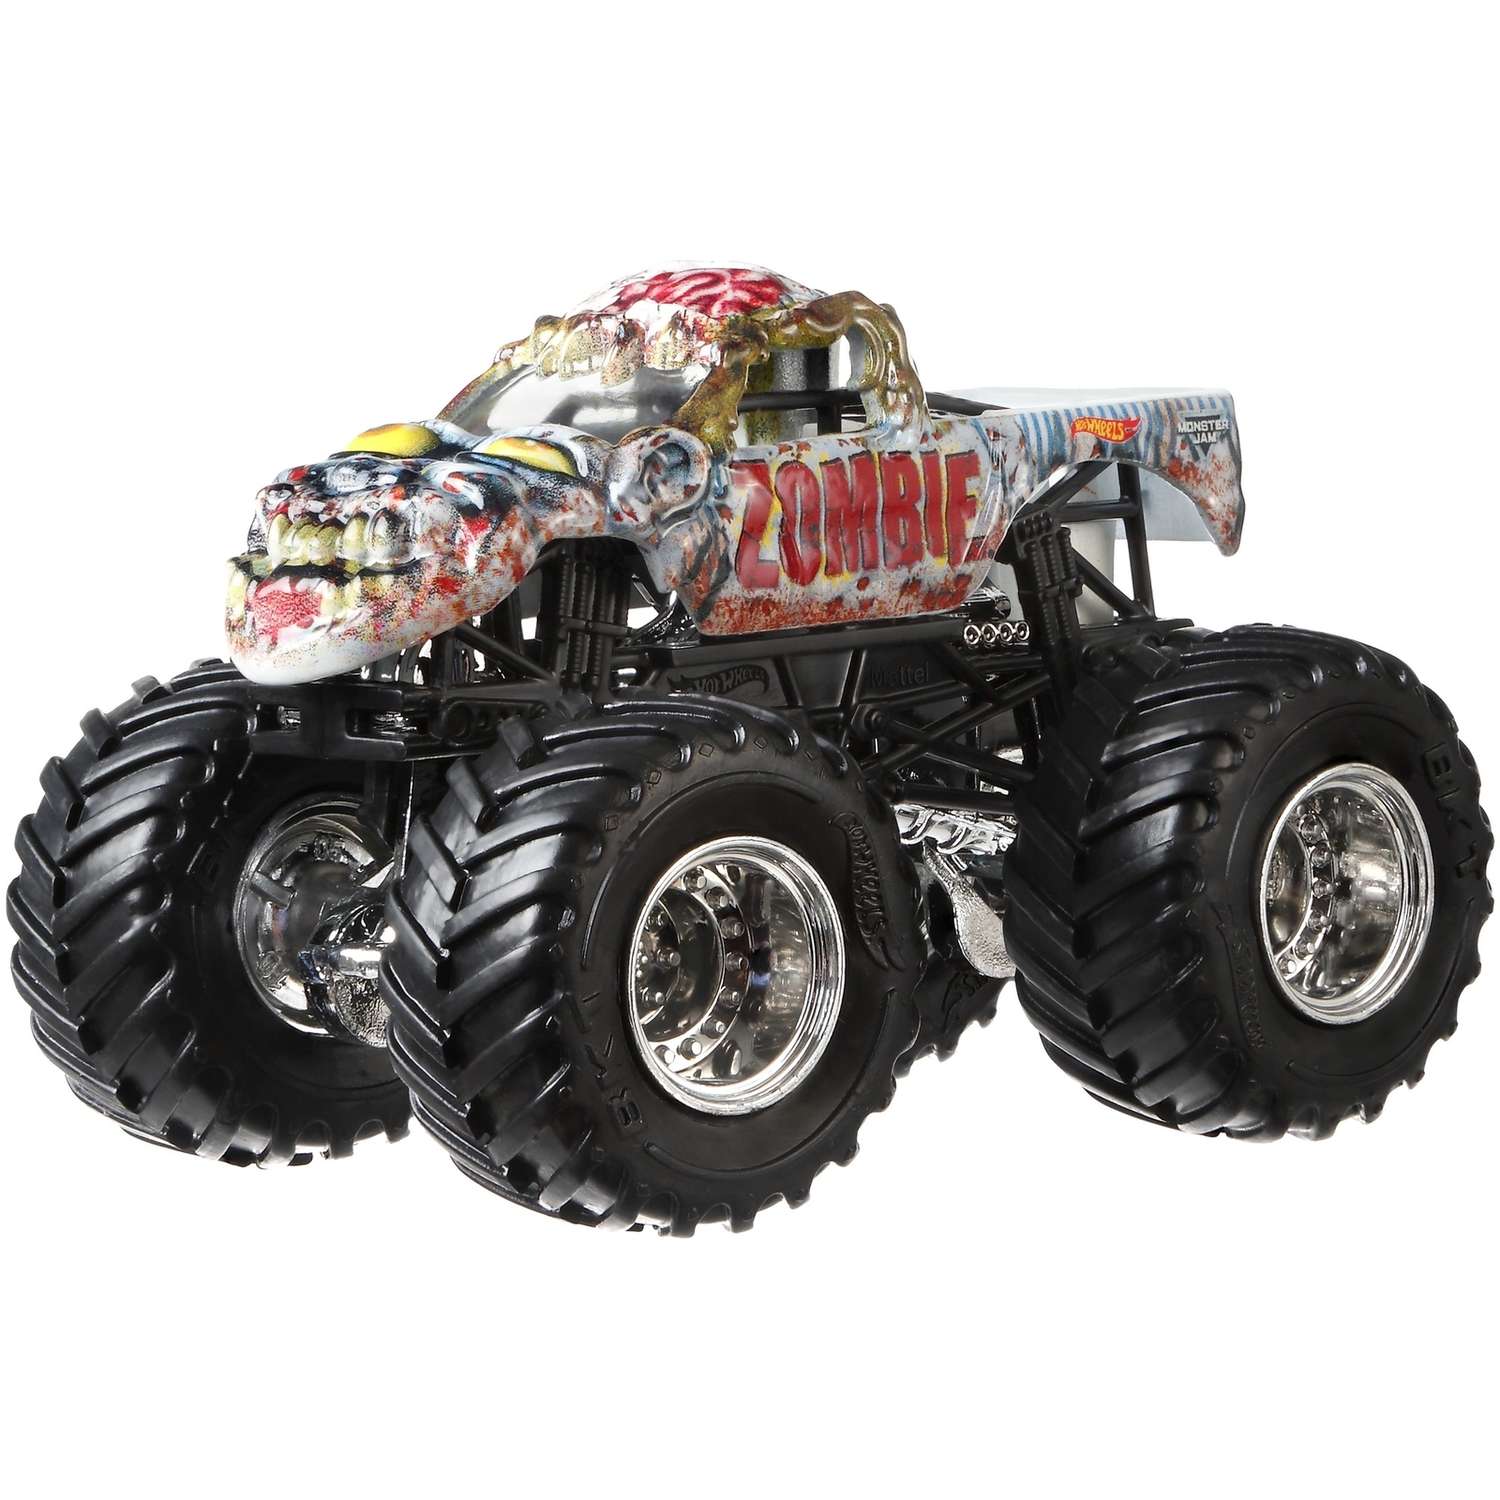 Машина Hot Wheels Monster Jam 1:64 Creatures Зомби FLX49 21572 - фото 5